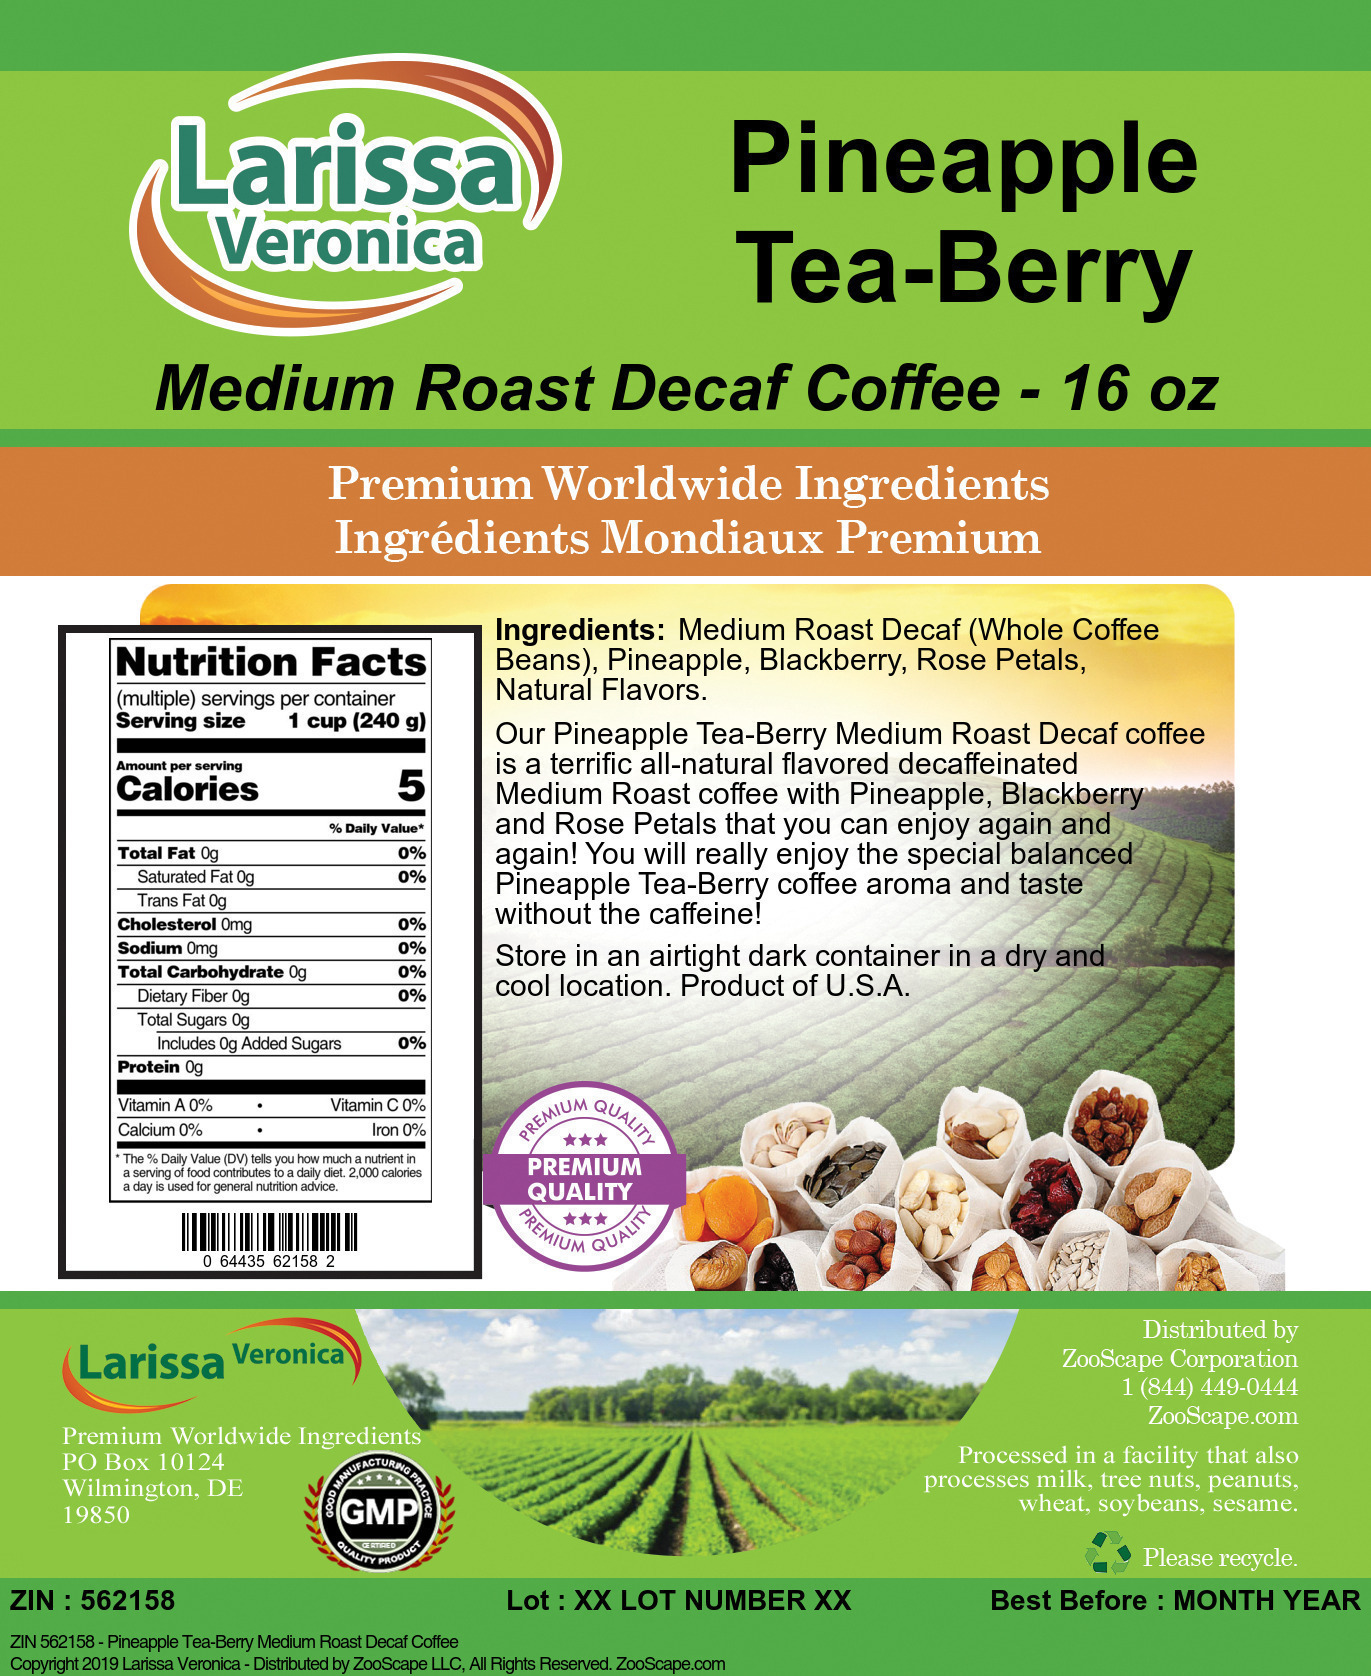 Pineapple Tea-Berry Medium Roast Decaf Coffee - Label